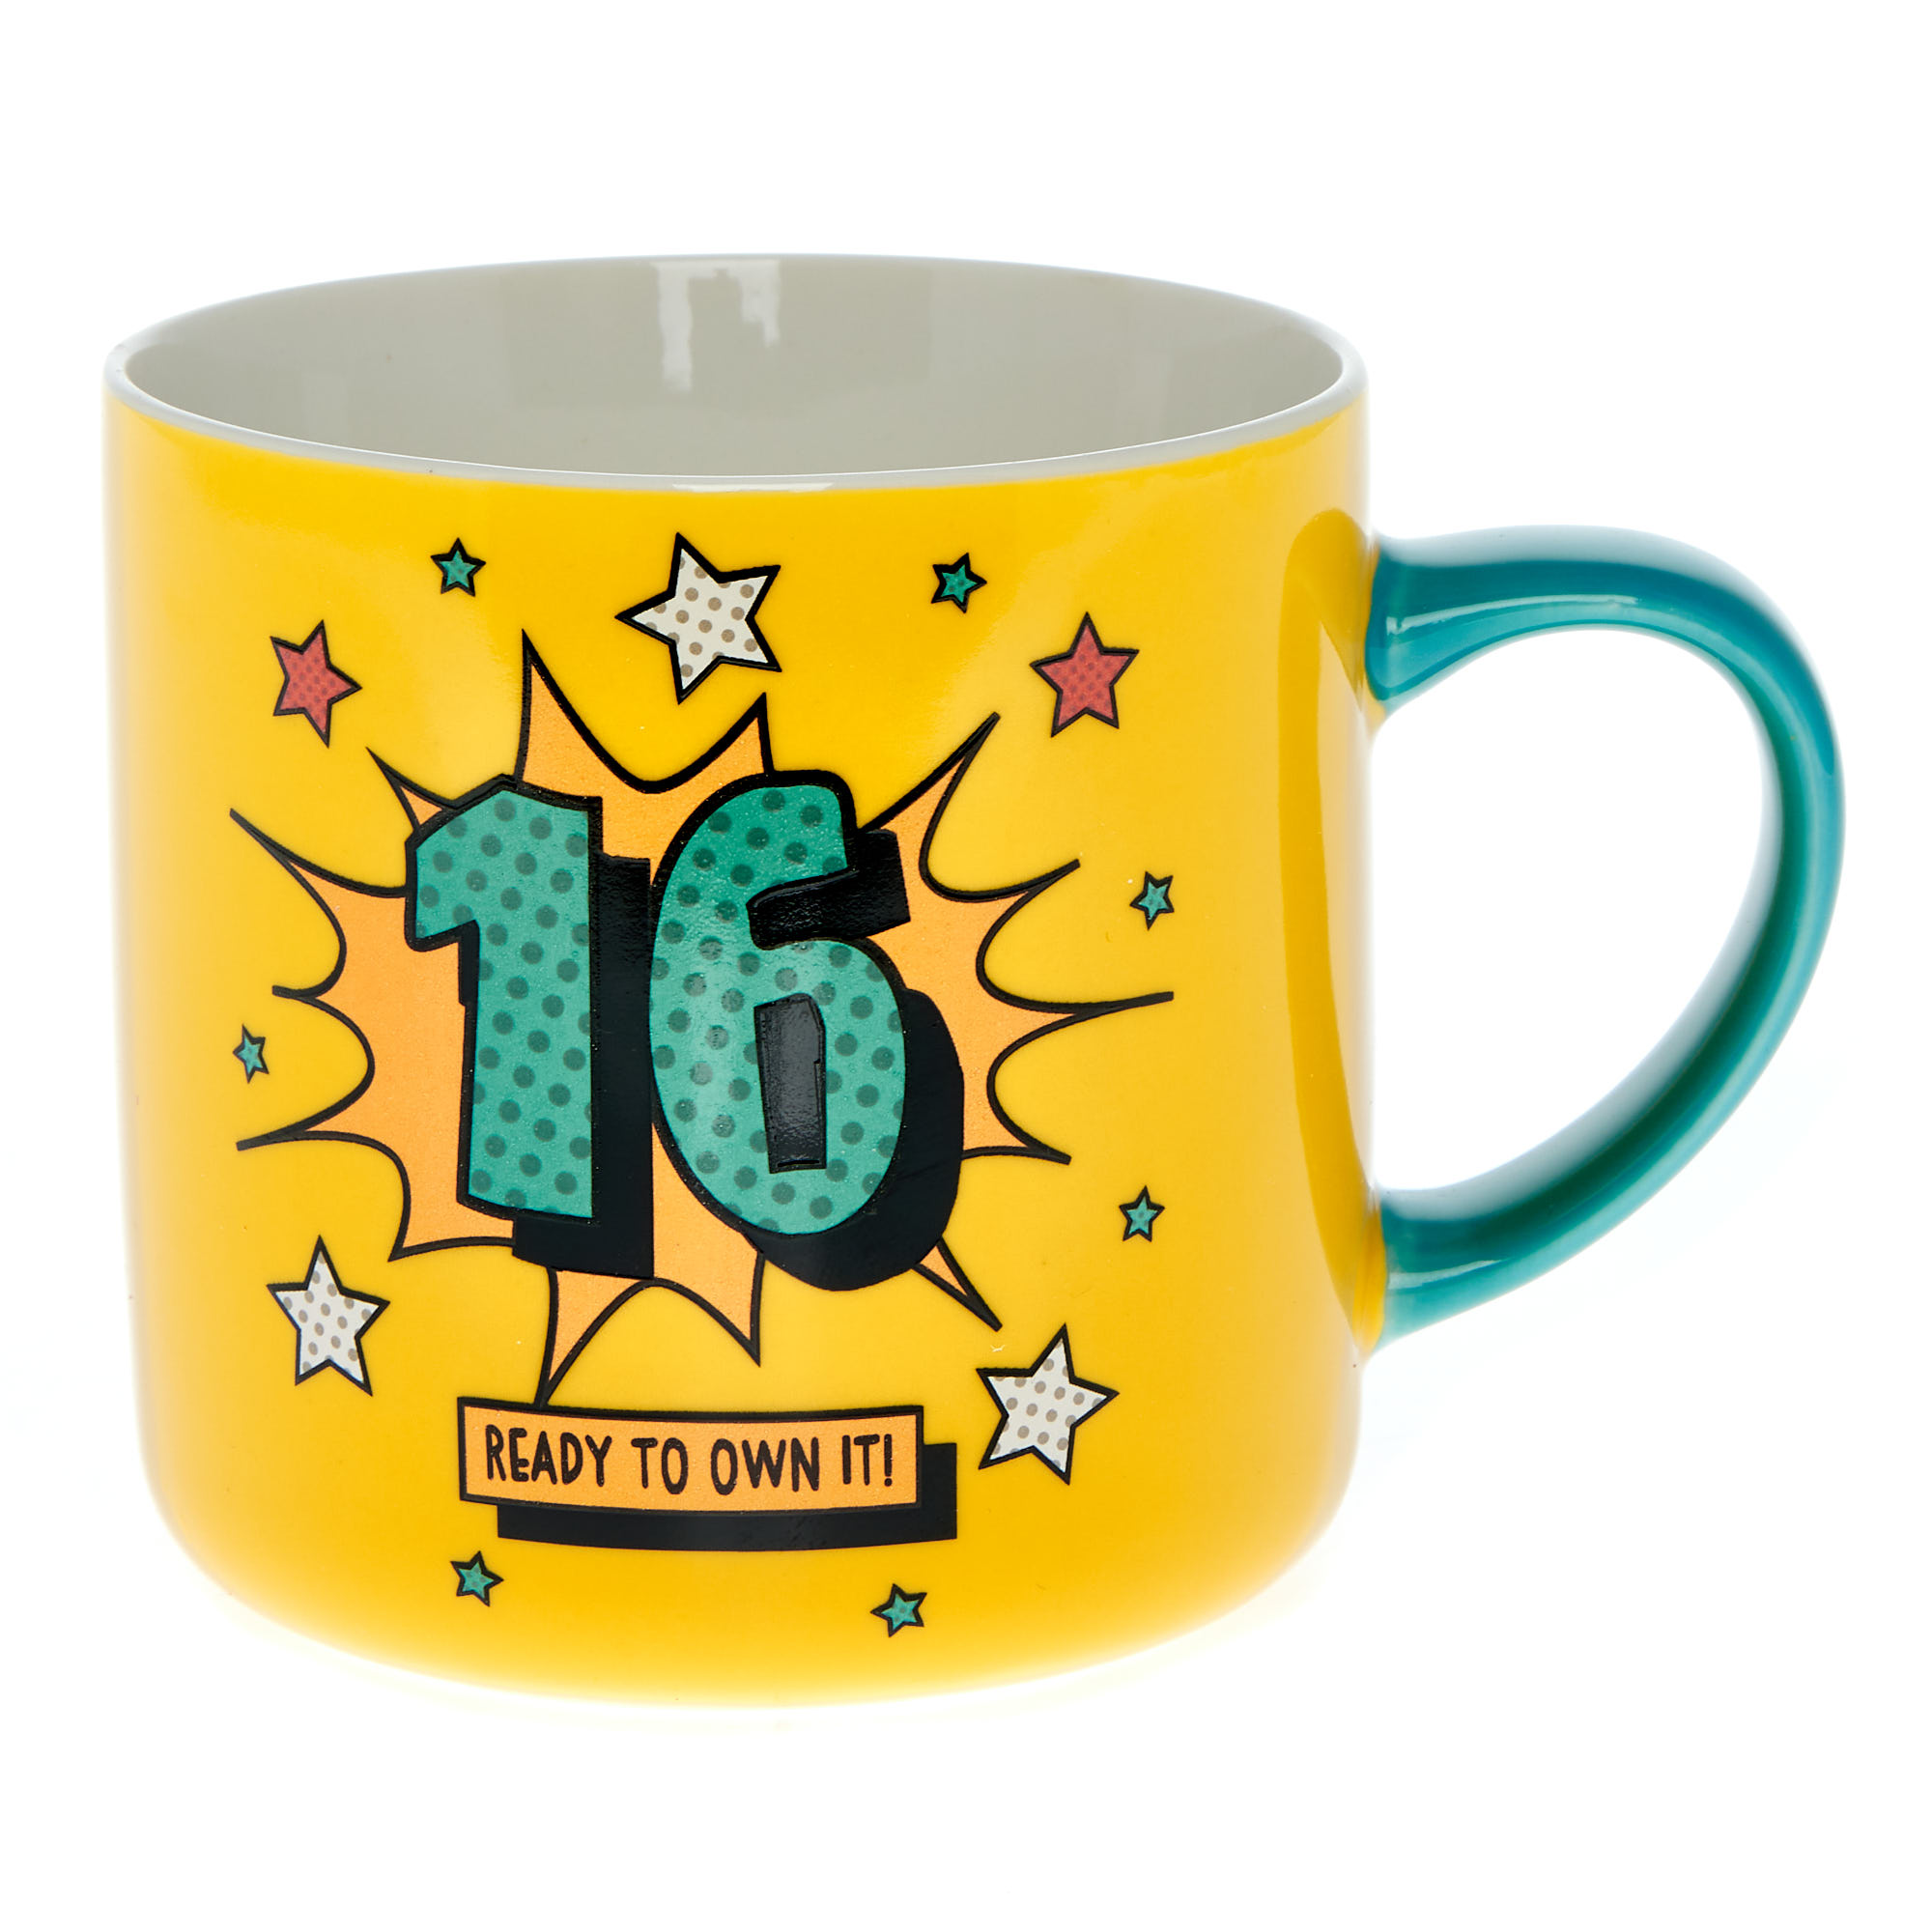 Ready To Own It 16th Birthday Mug